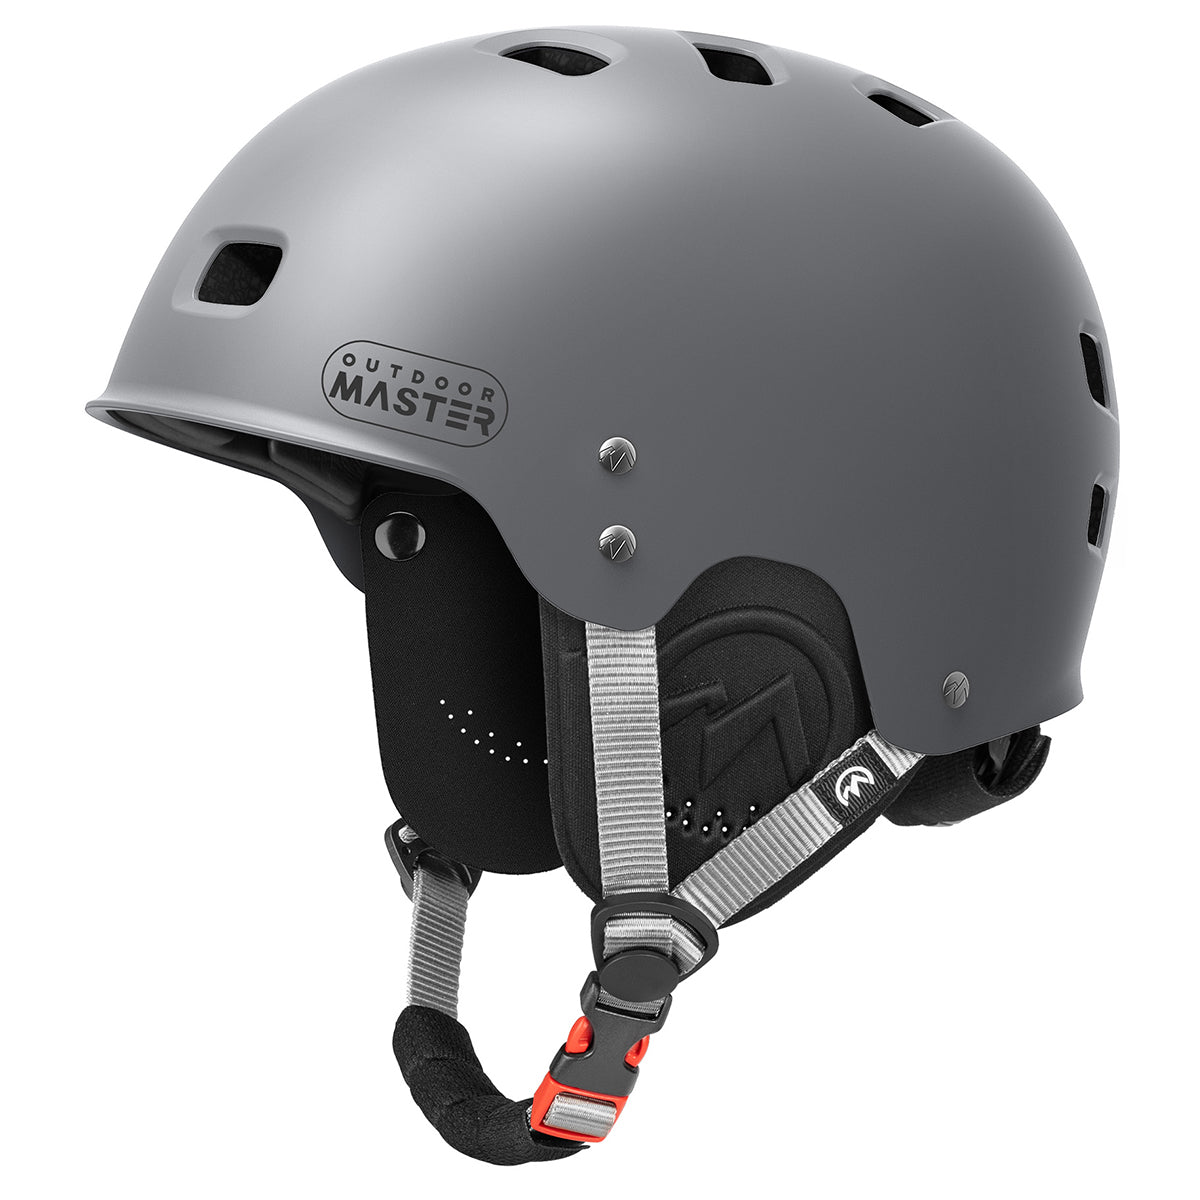 Kayak Helmet